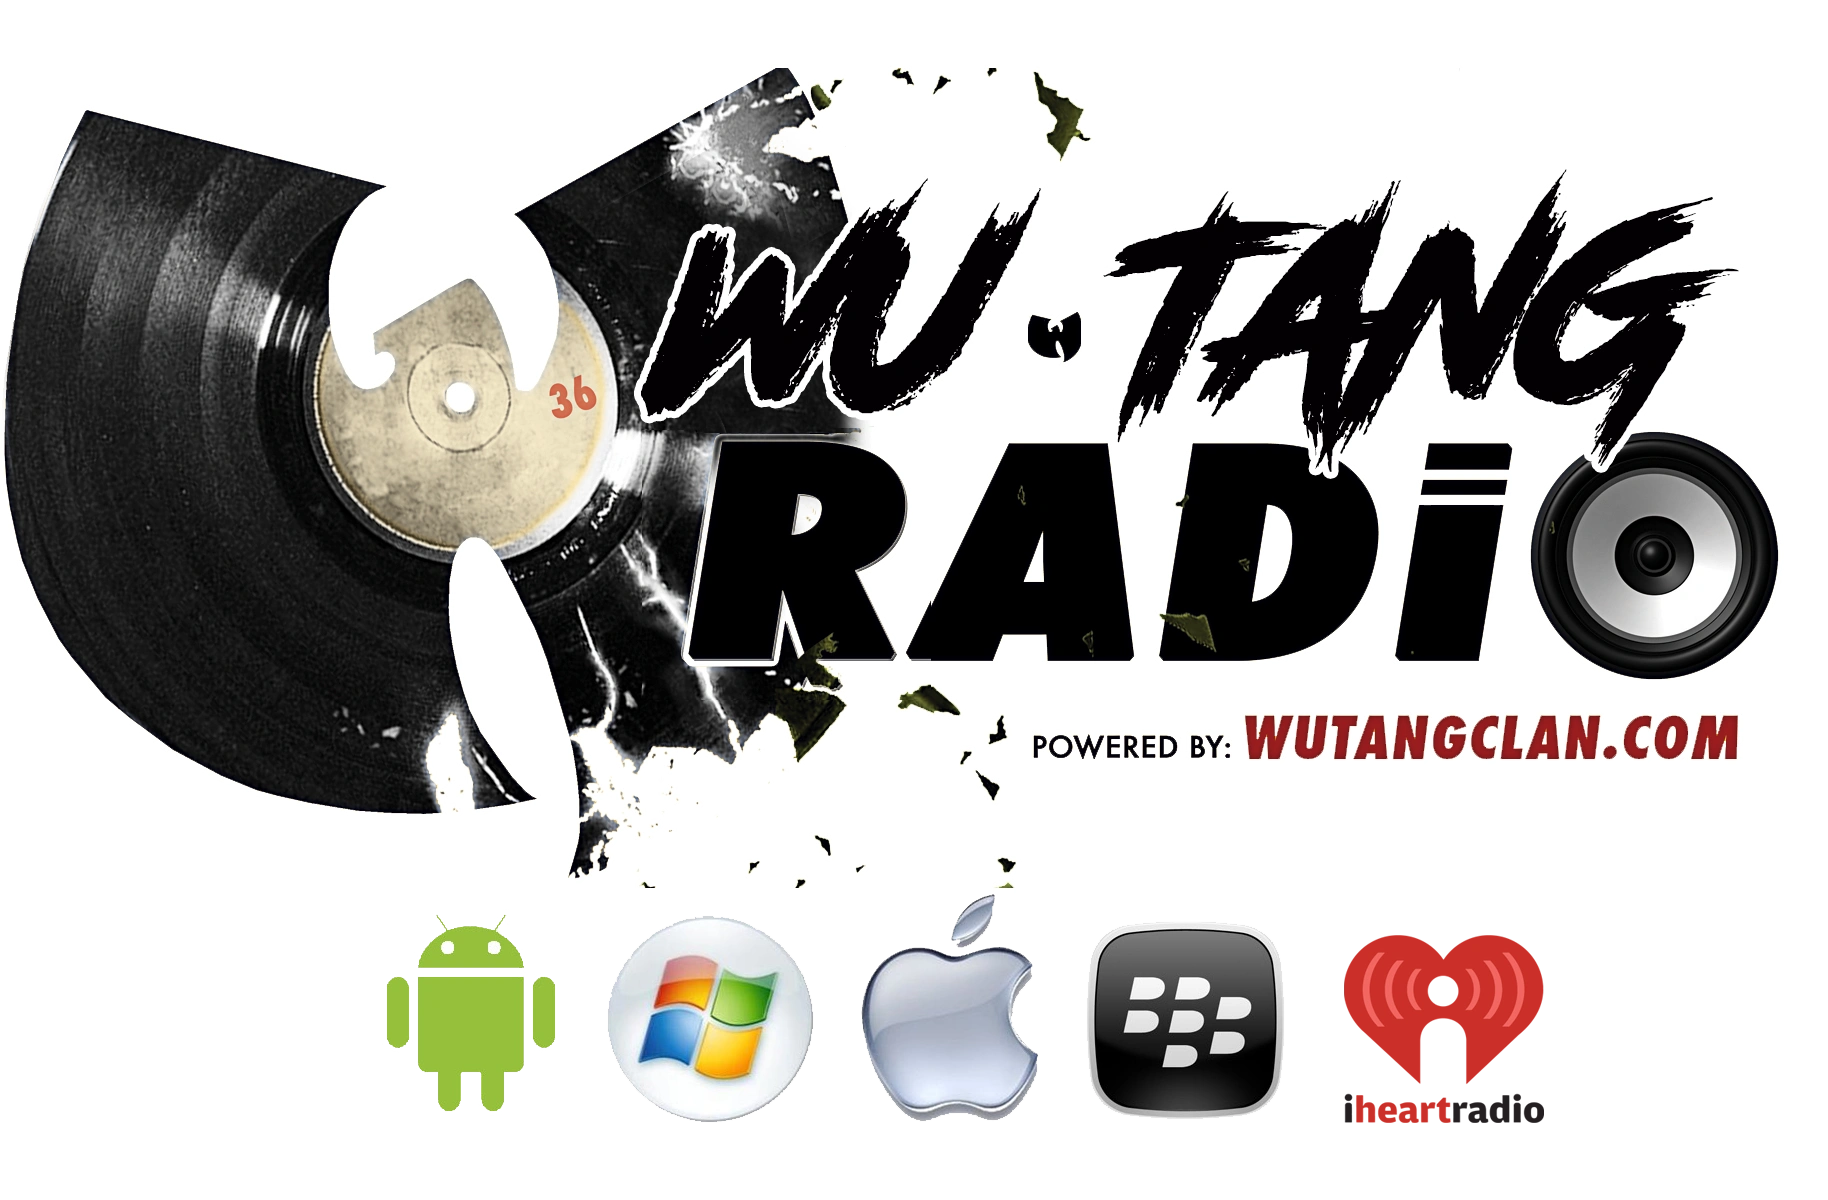 Wu-Tang Radio